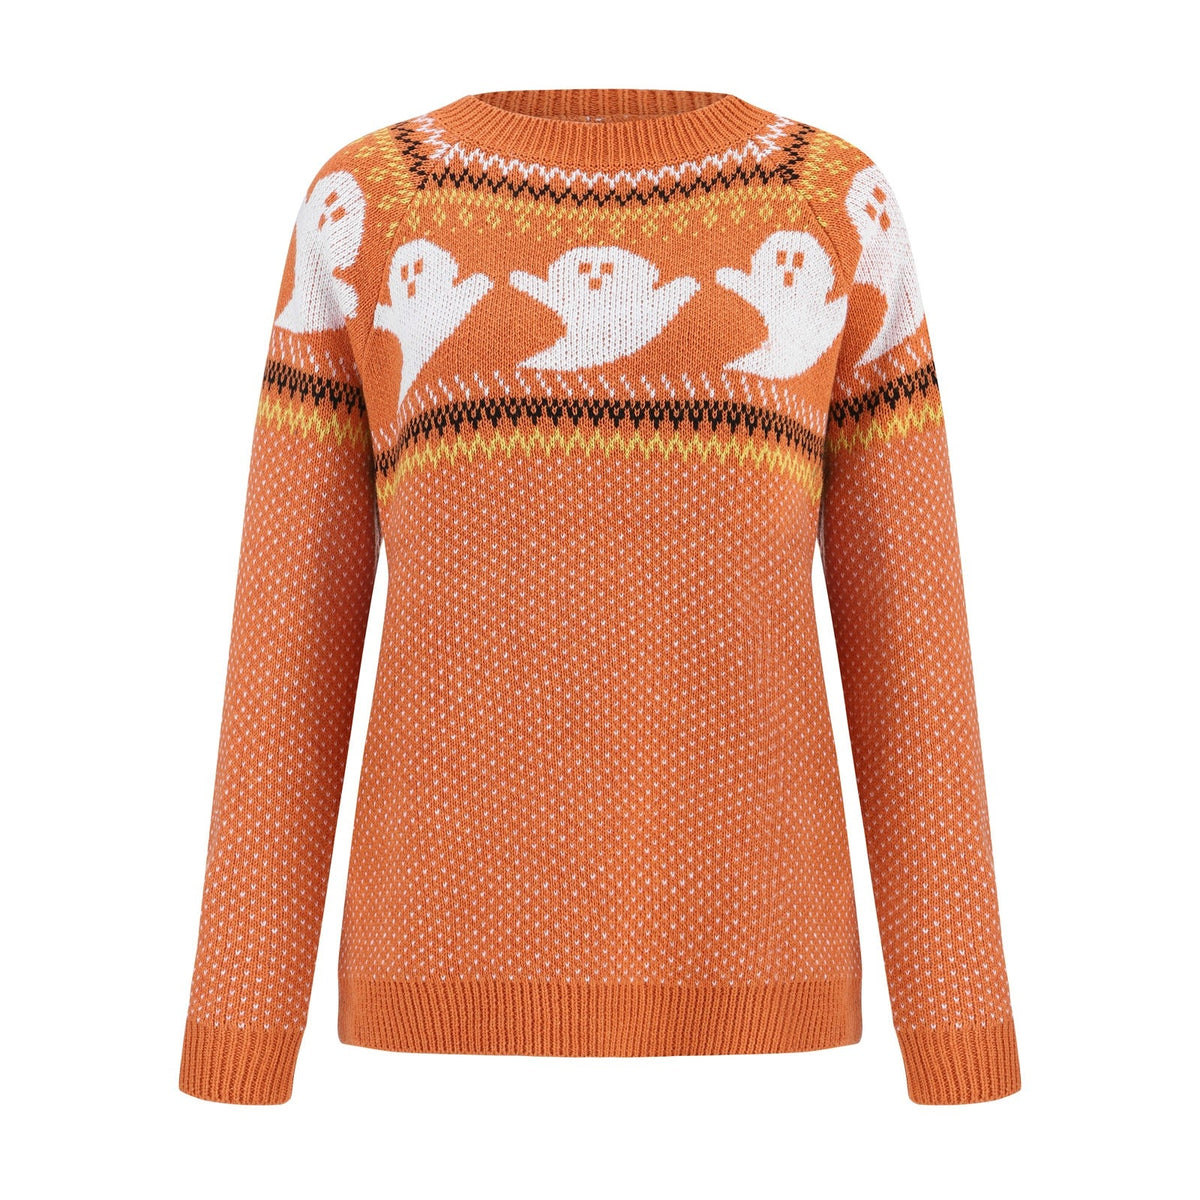 Rags n Rituals 'Casper' Orange Ghost Sweater at $37.99 USD